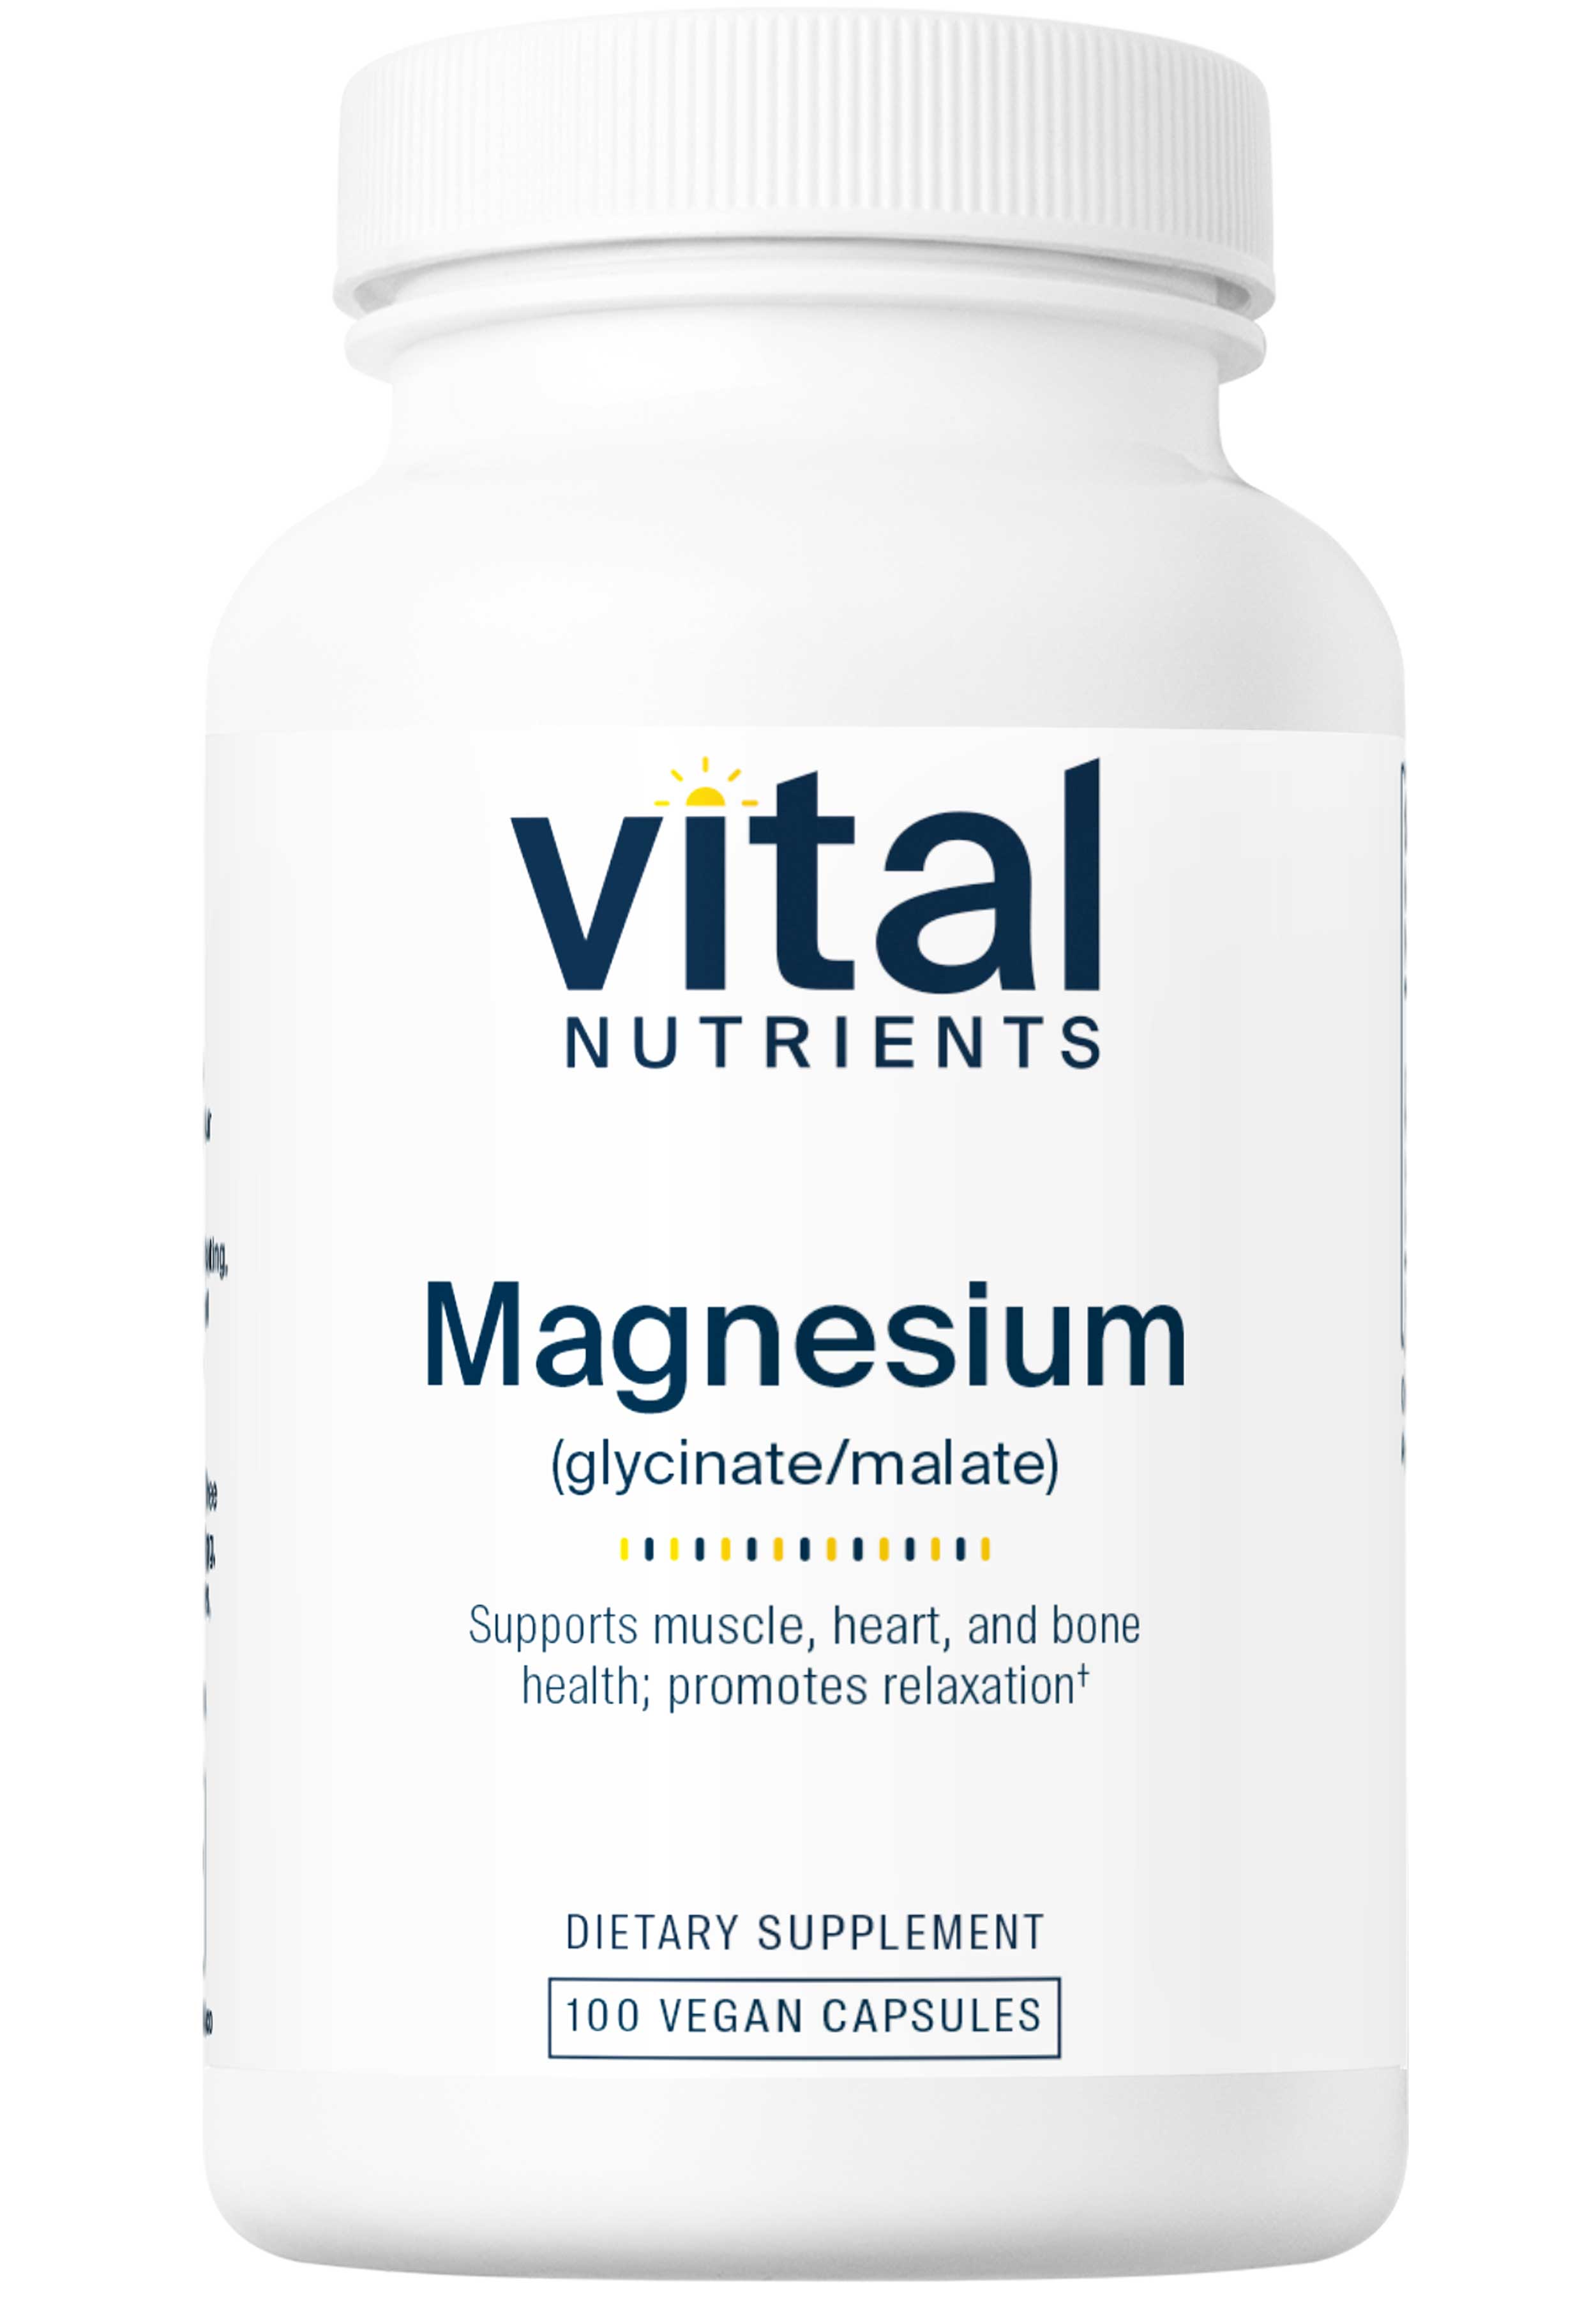 Vital Nutrients Magnesium (glycinate/malate)